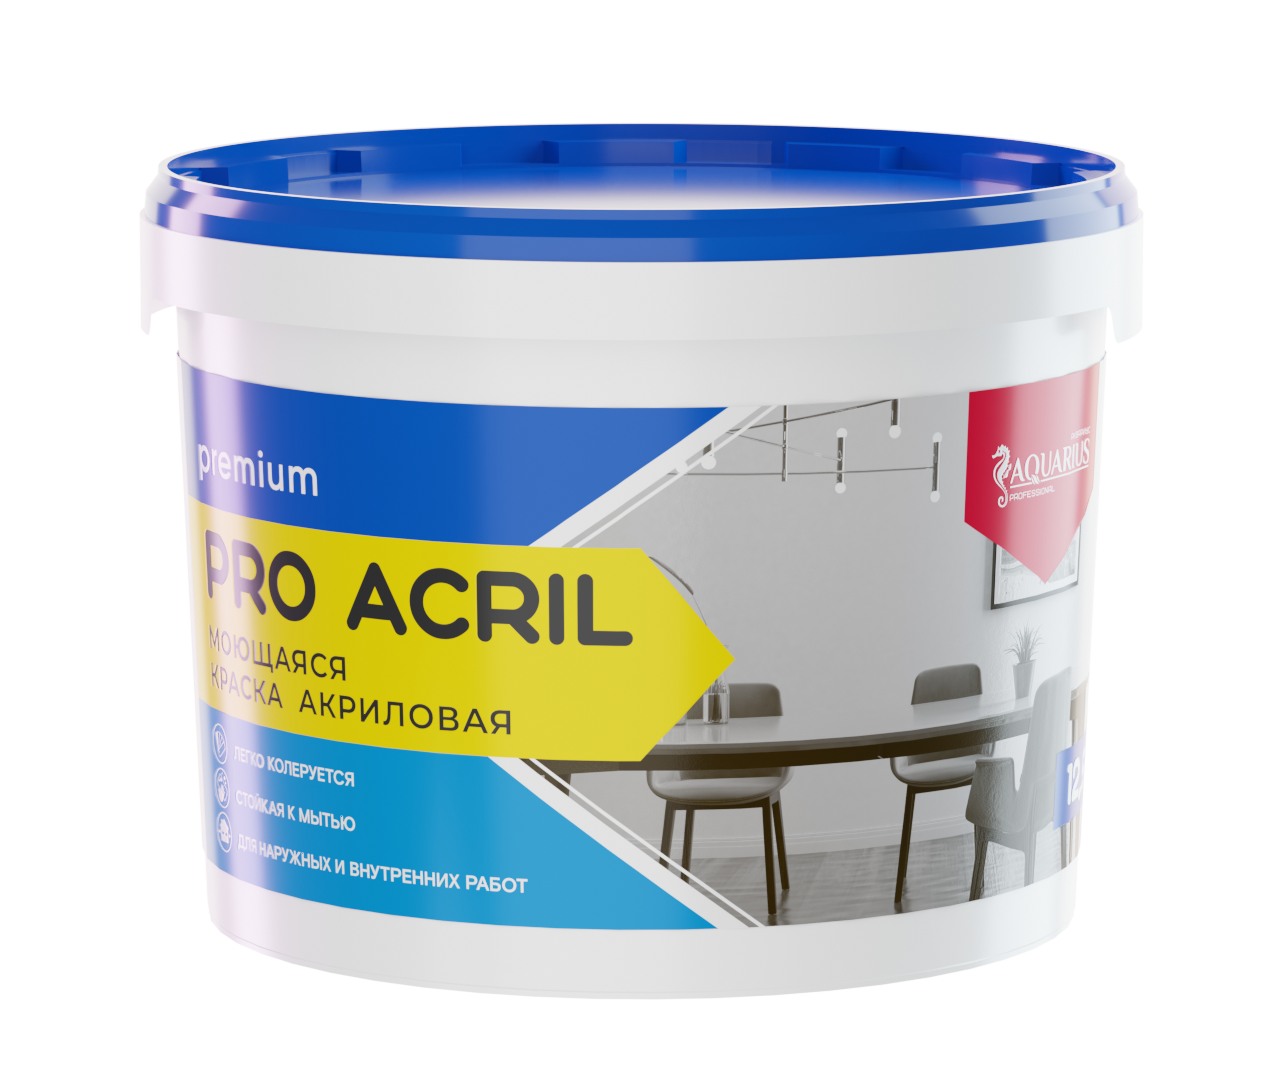 Краска PRO ACRIL "Aquarius" моющаяся - 3 кг, 6,5 кг и 12.5 кг